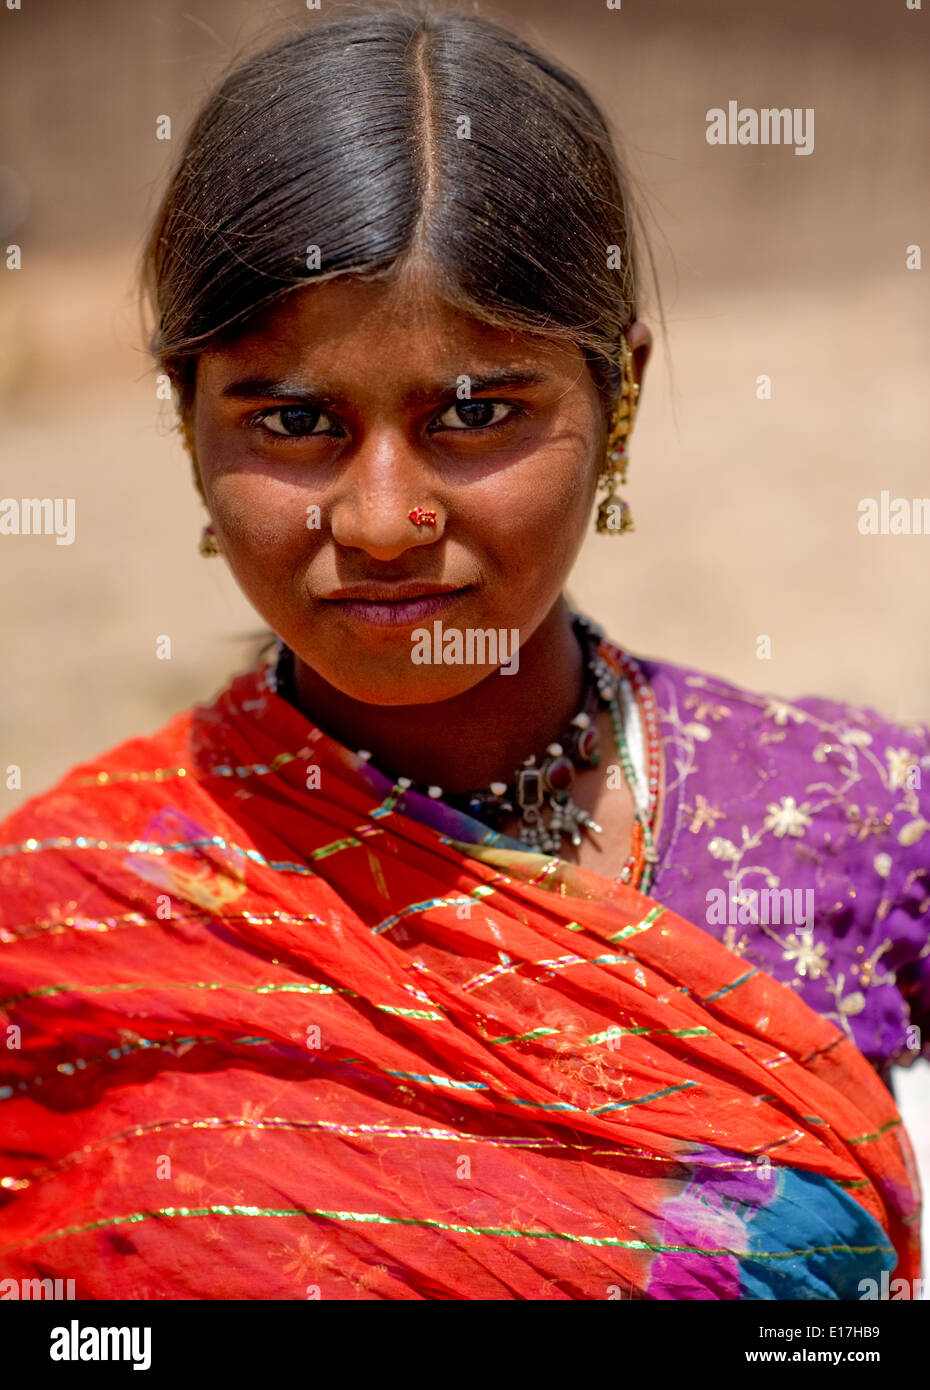 Les femmes de la tribu Kalbelia sont herderrs de troupeaux de chèvres et d'ânes. Le Rajasthan, Inde. Herder Rural tribu en village. Banque D'Images